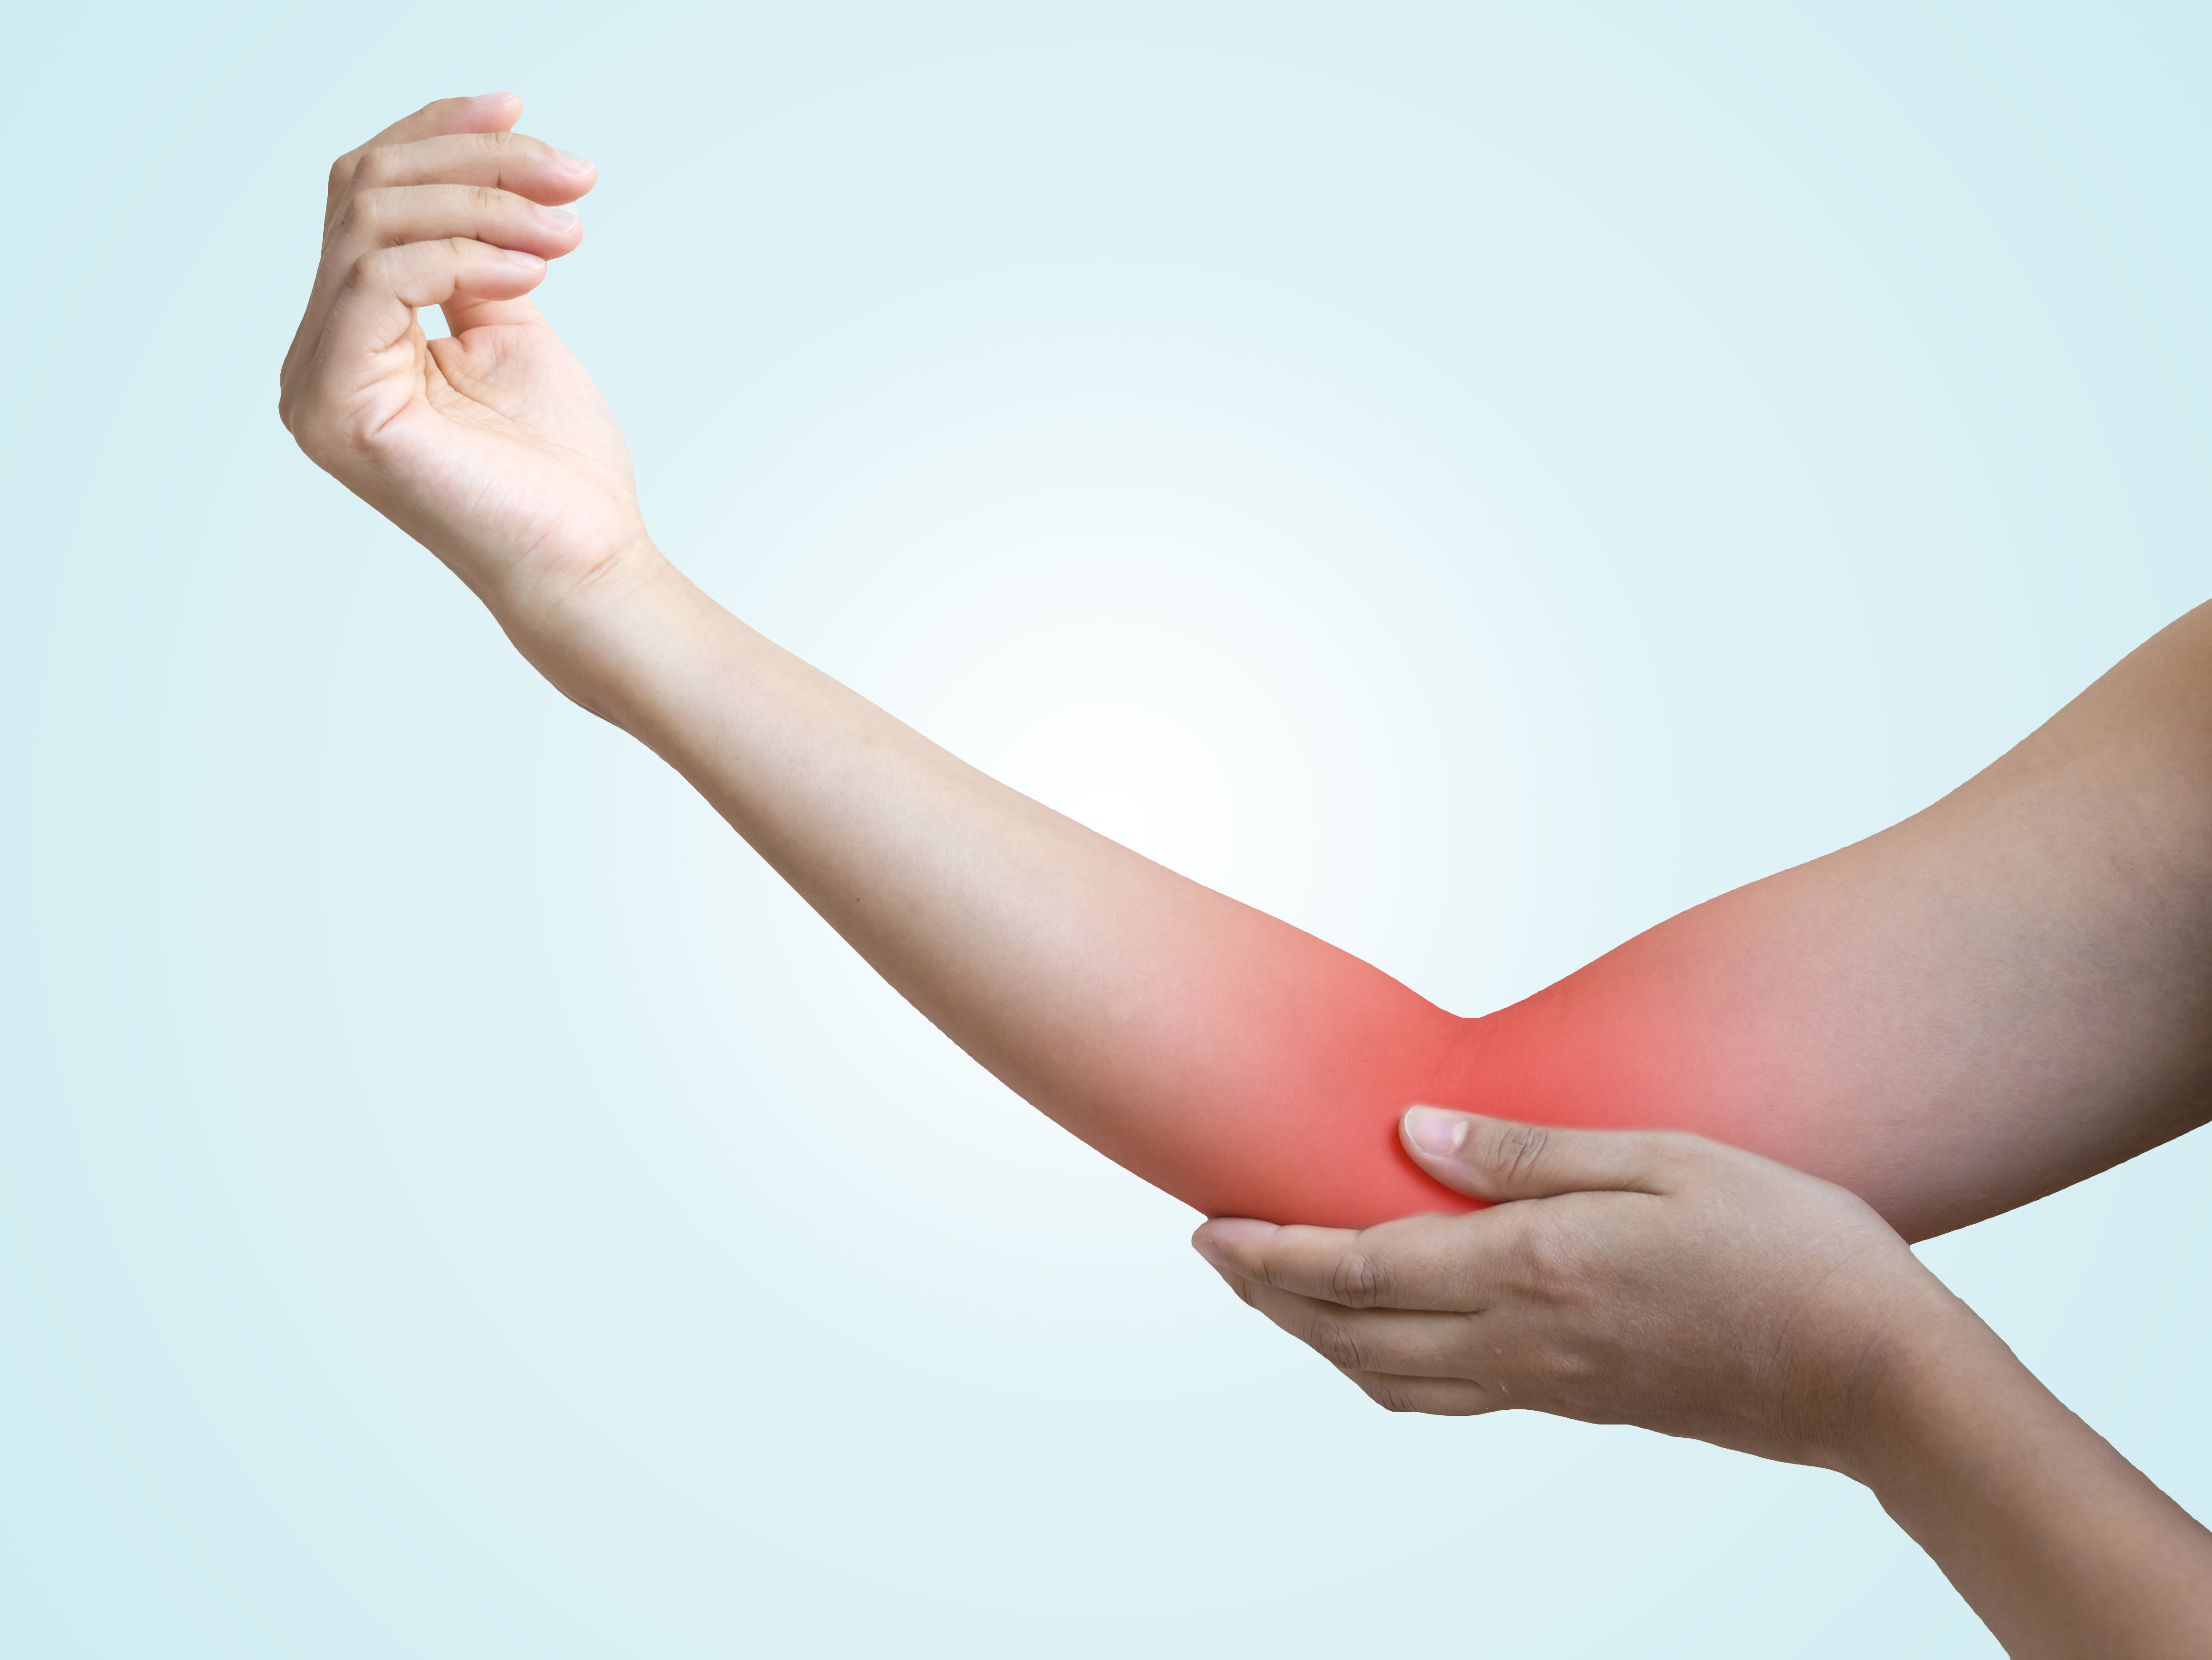 baralgin și dureri articulare unguent pentru dureri musculare și articulare